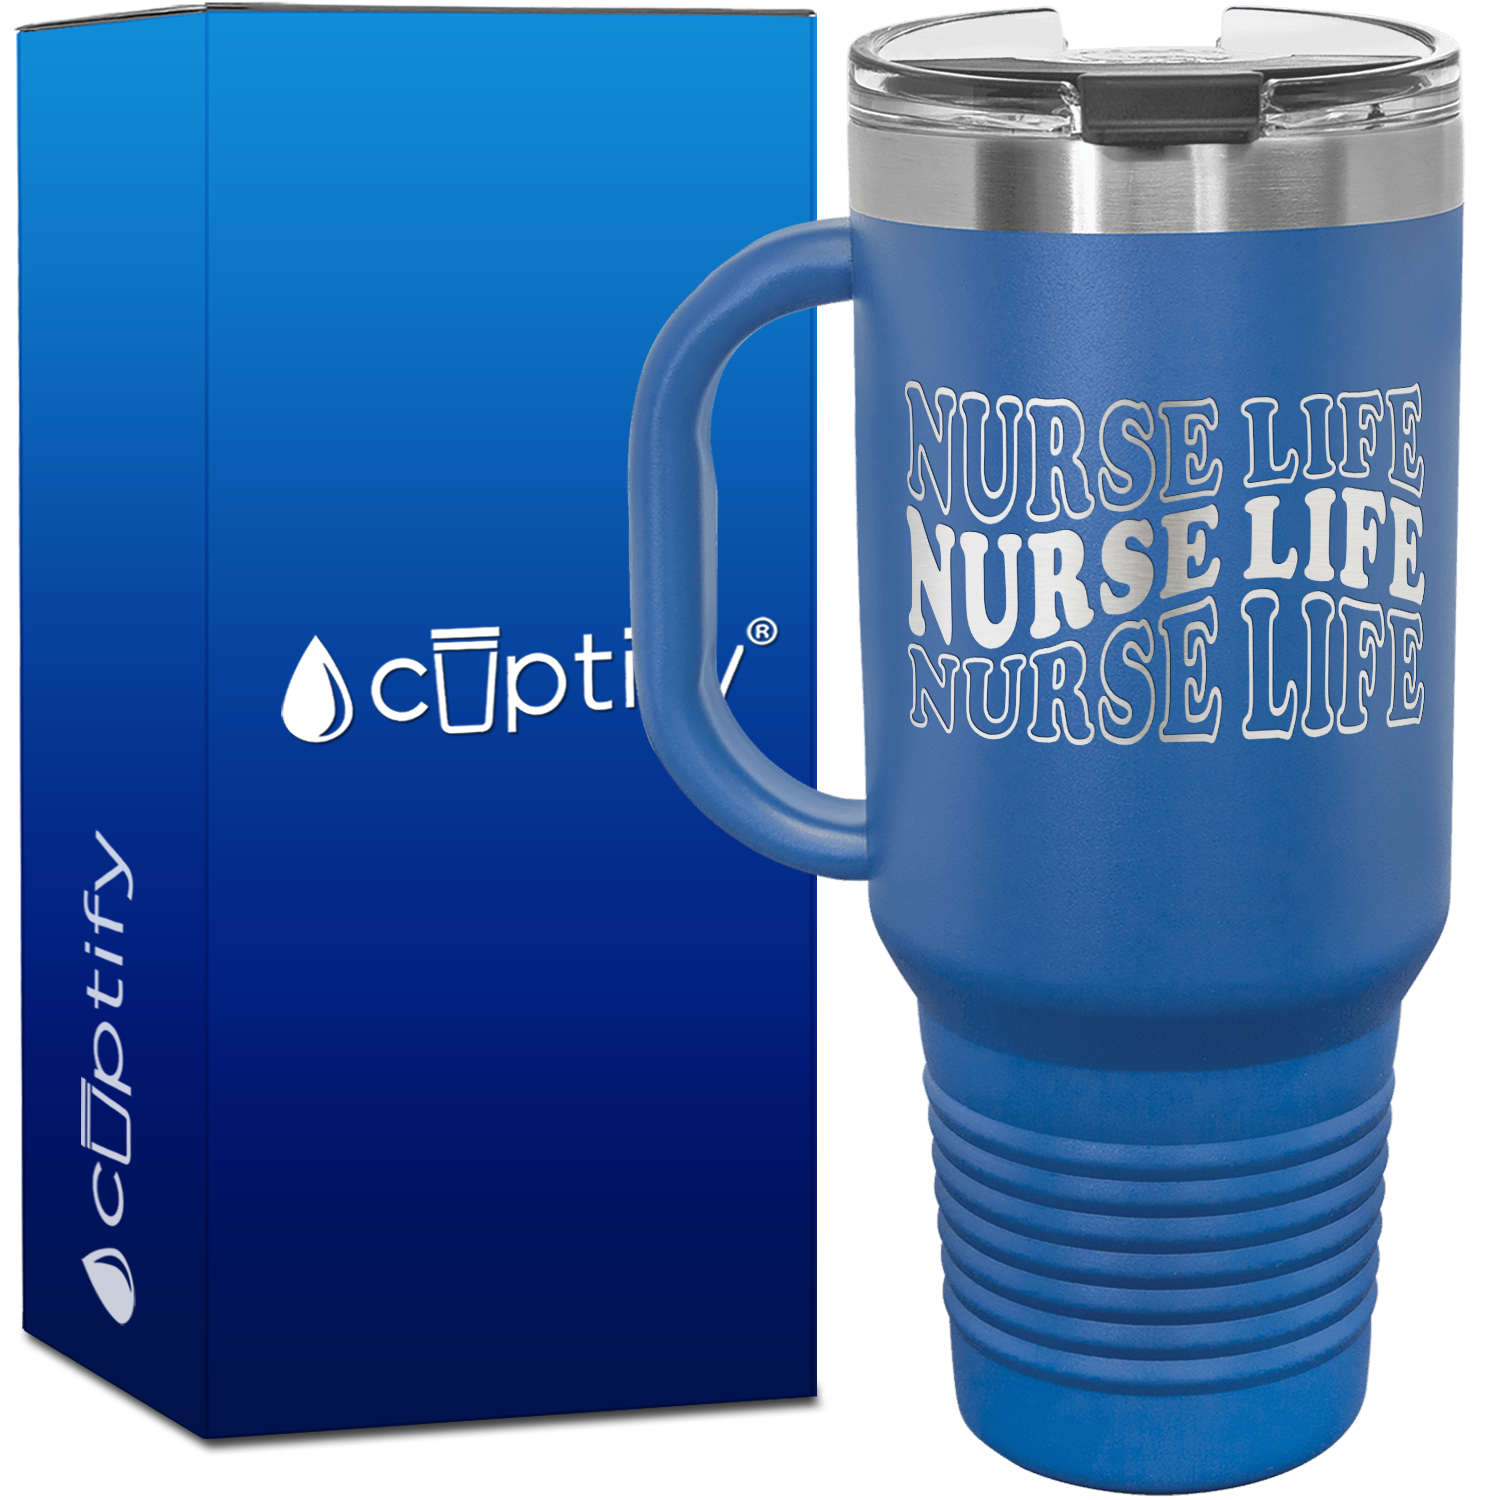 Nurse Life Nurse Life Nurse Life 40oz Nurse Travel Mug